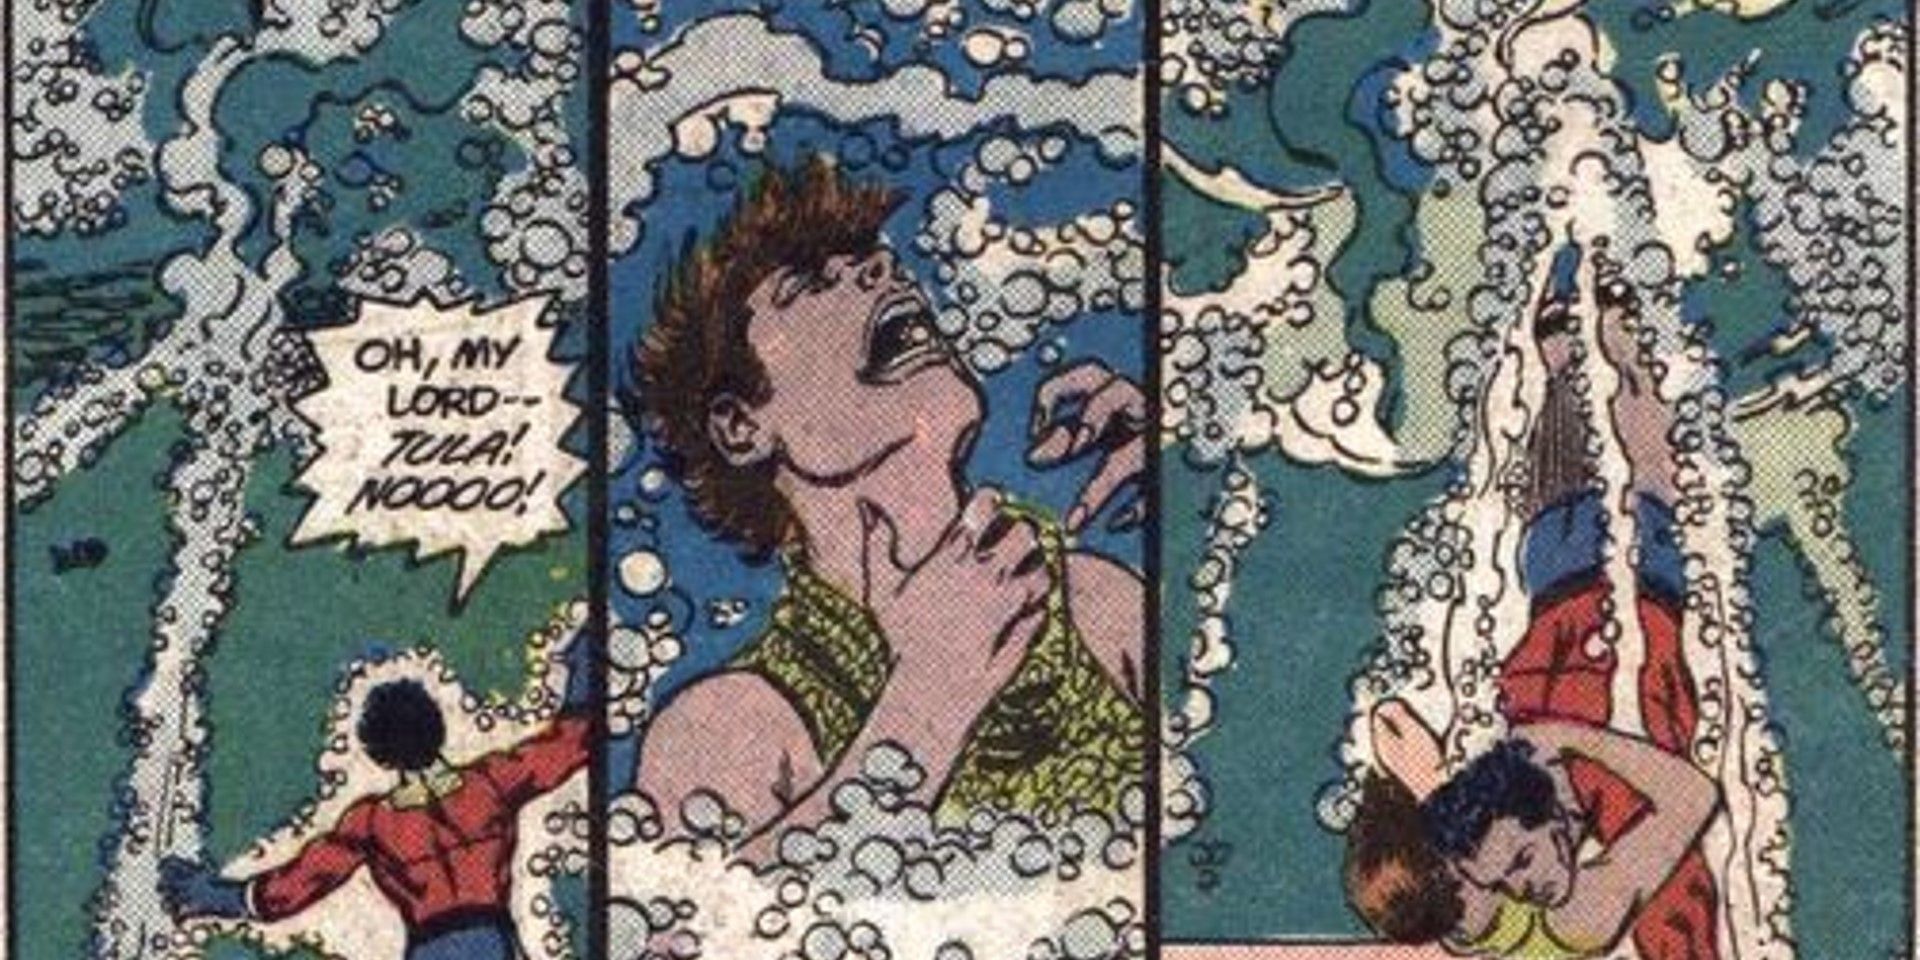 DC Comics panel shows Aquagirl dying.